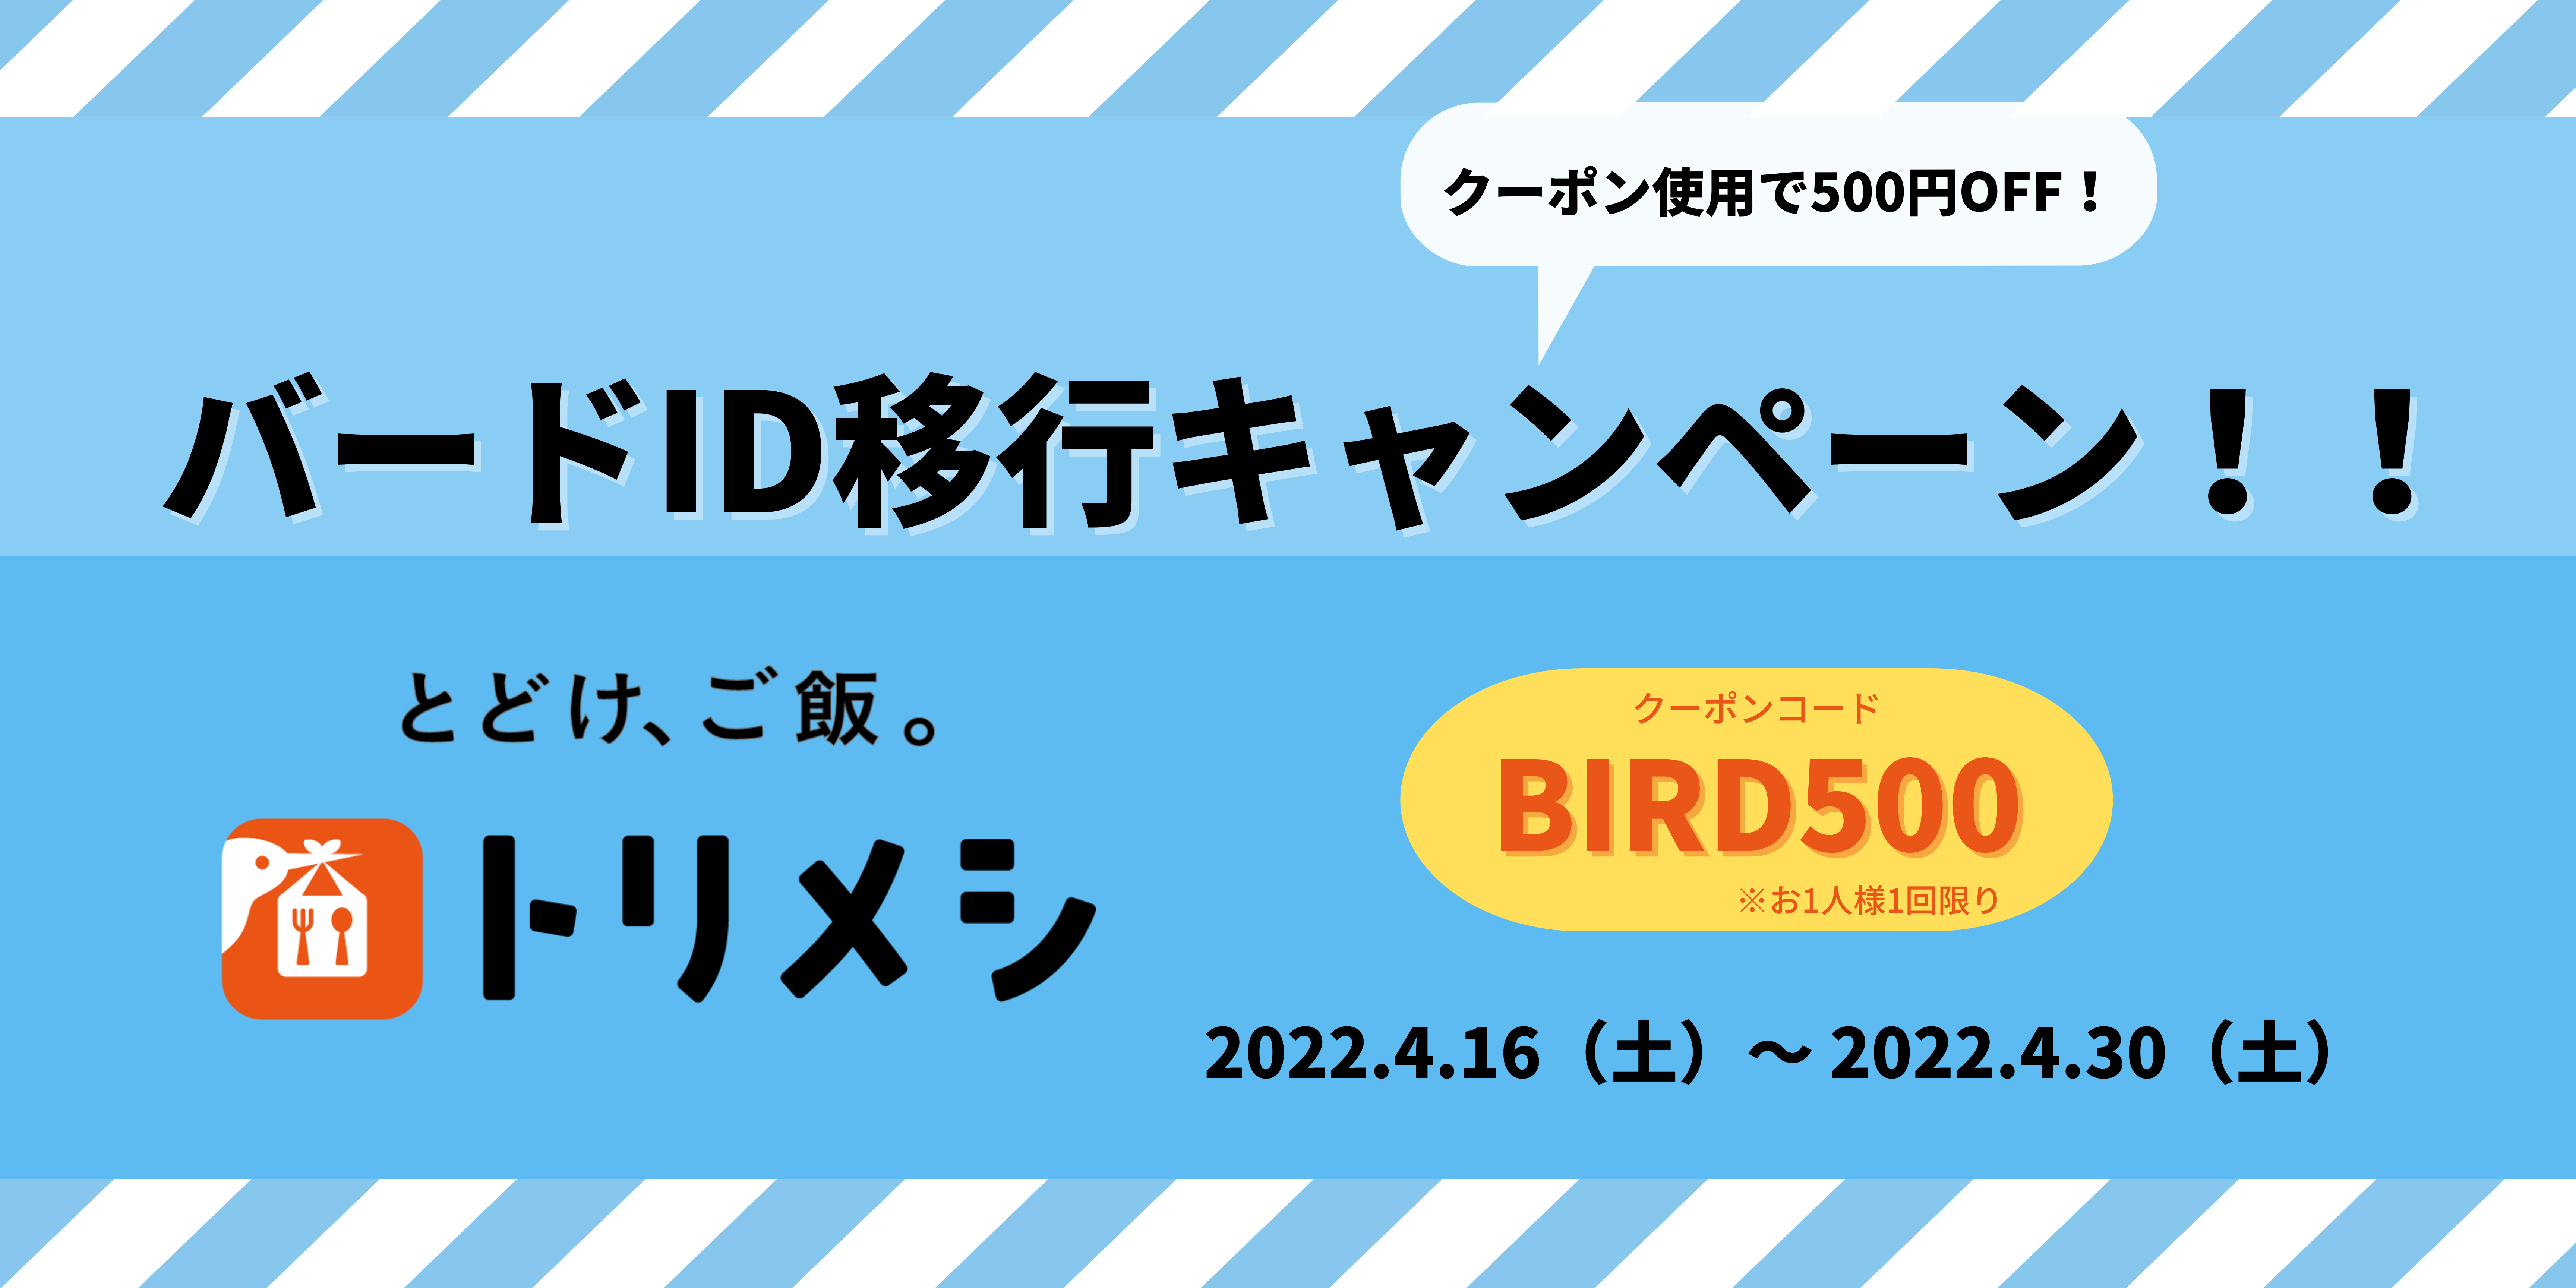 【終了しました】★バードID移行キャンペーン★500円OFFクーポン発行のお知らせ